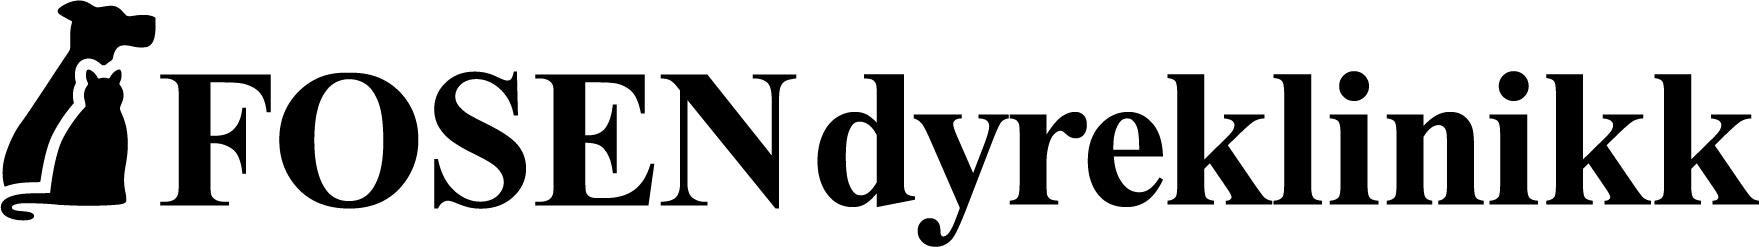 Logo-sort-liggende-paa-linje